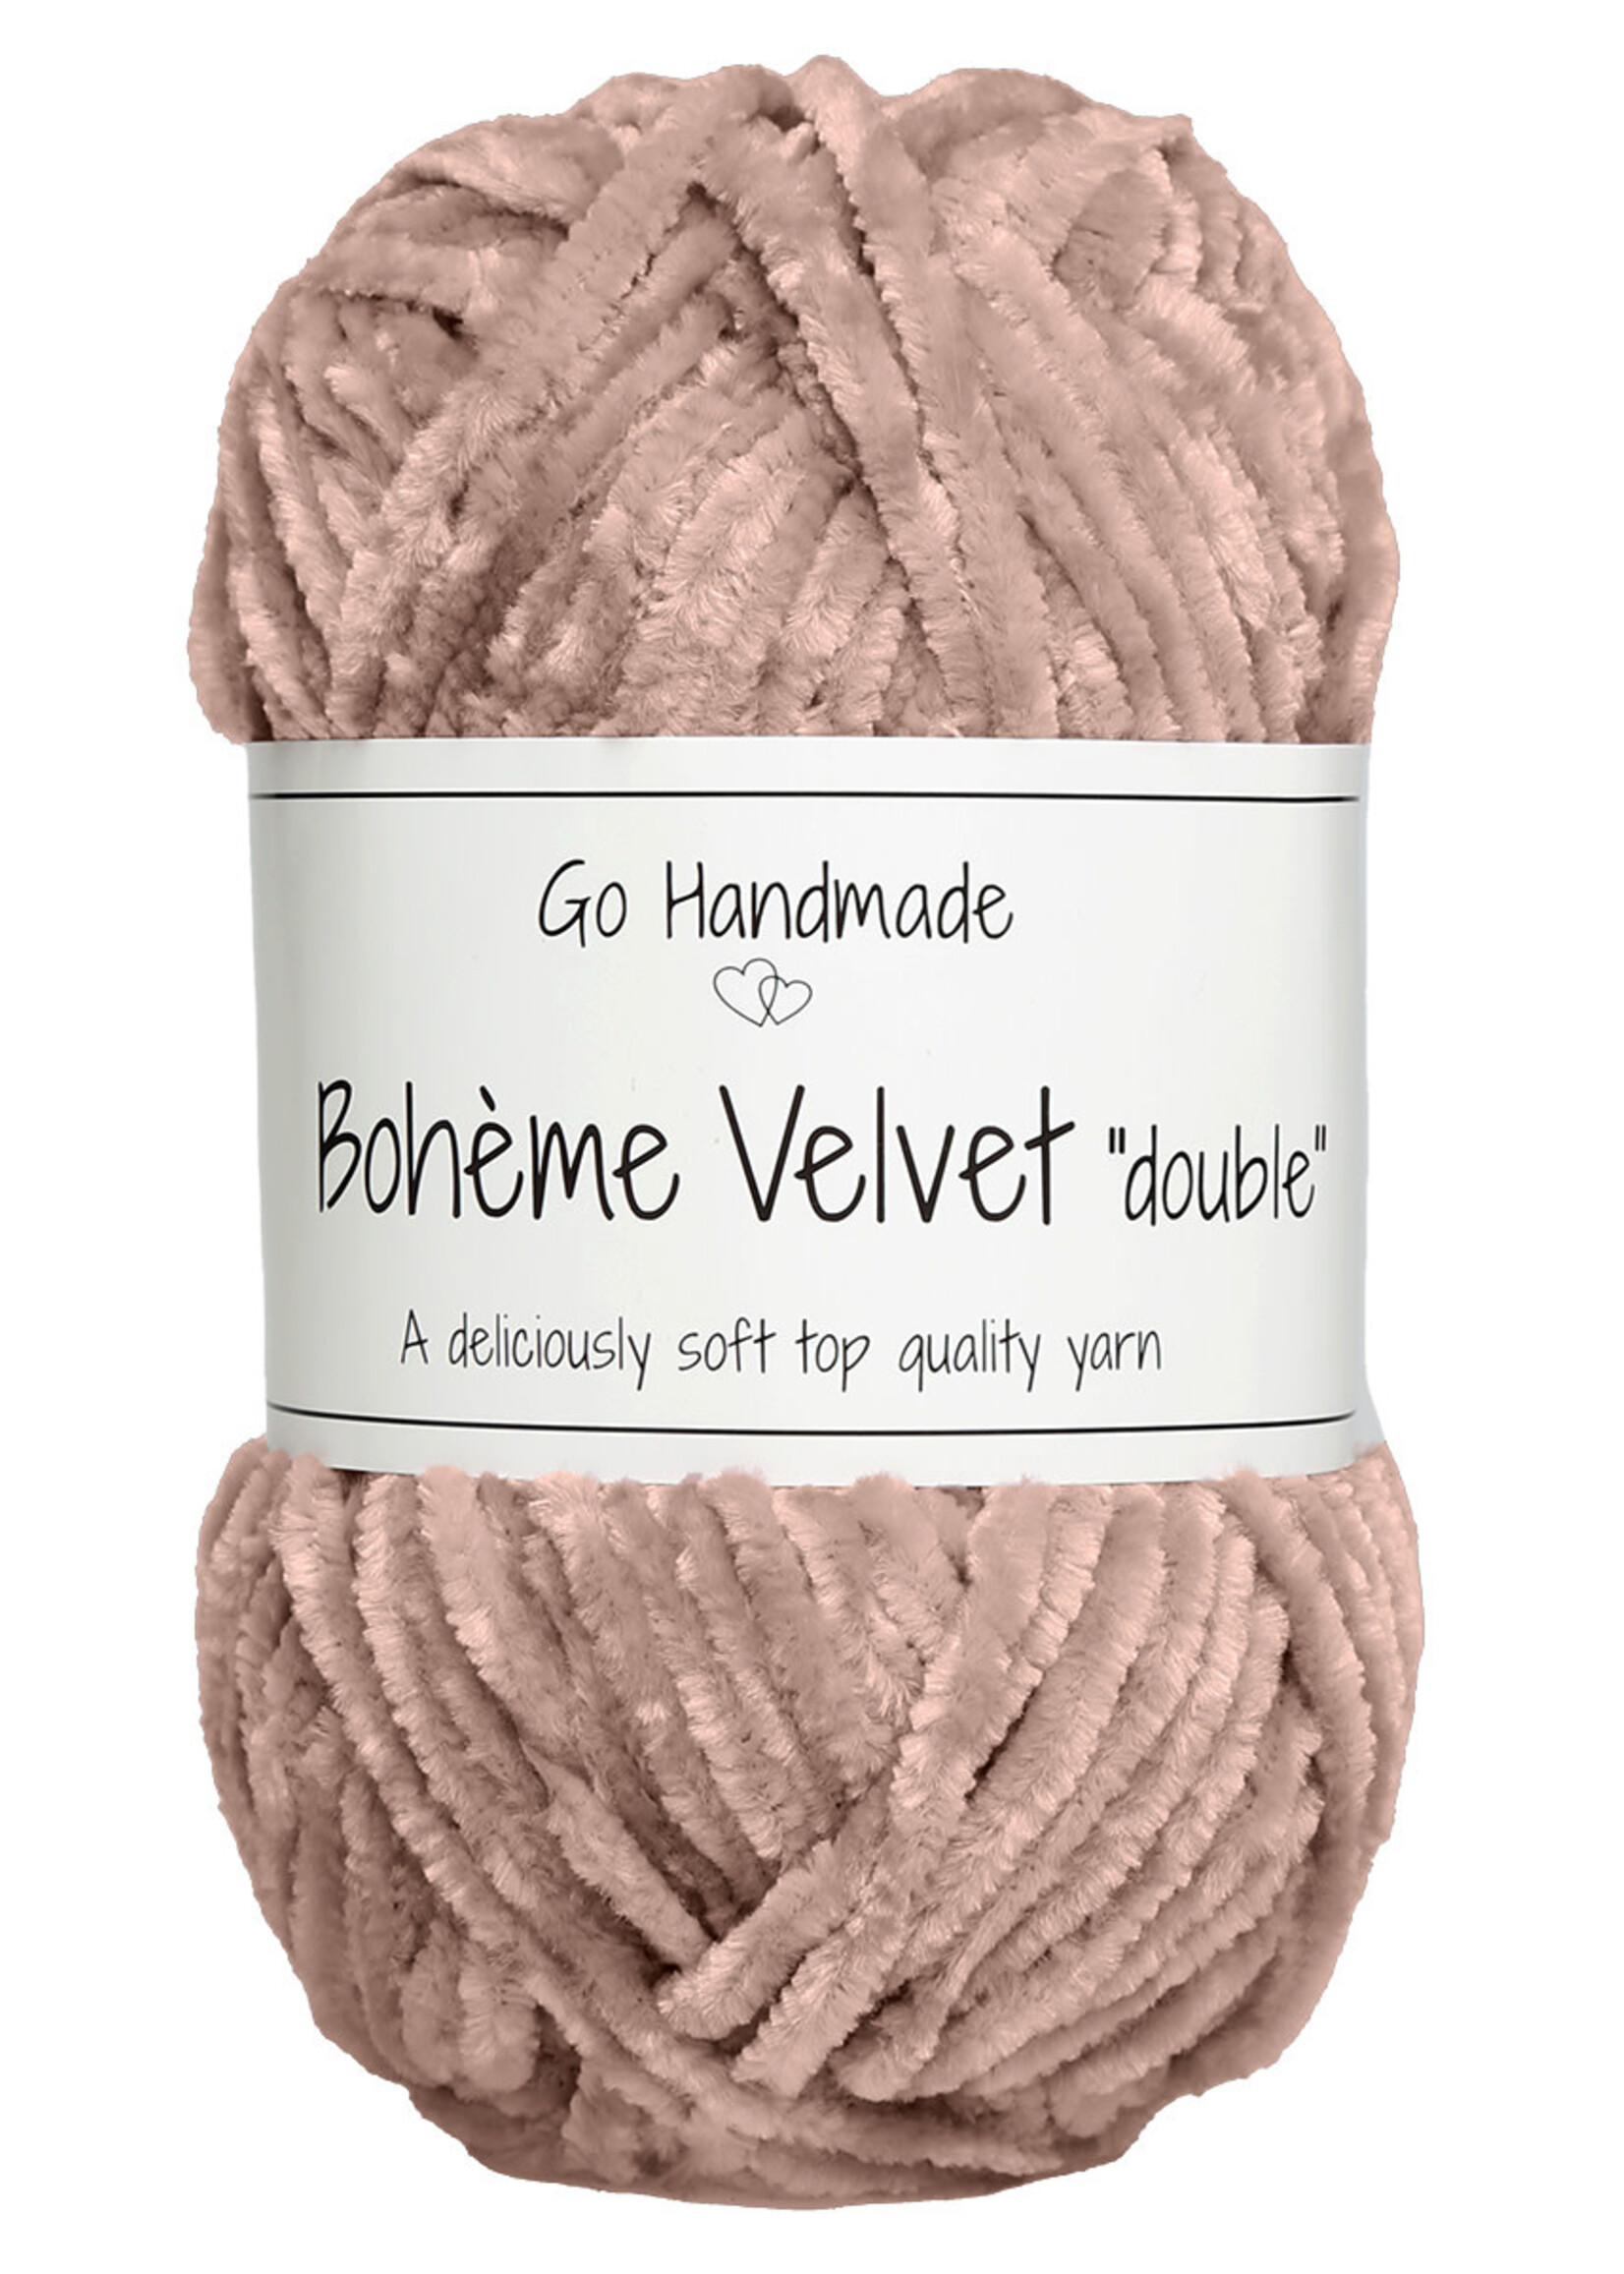 GoHandmade Bohème Velvet "double" -brown